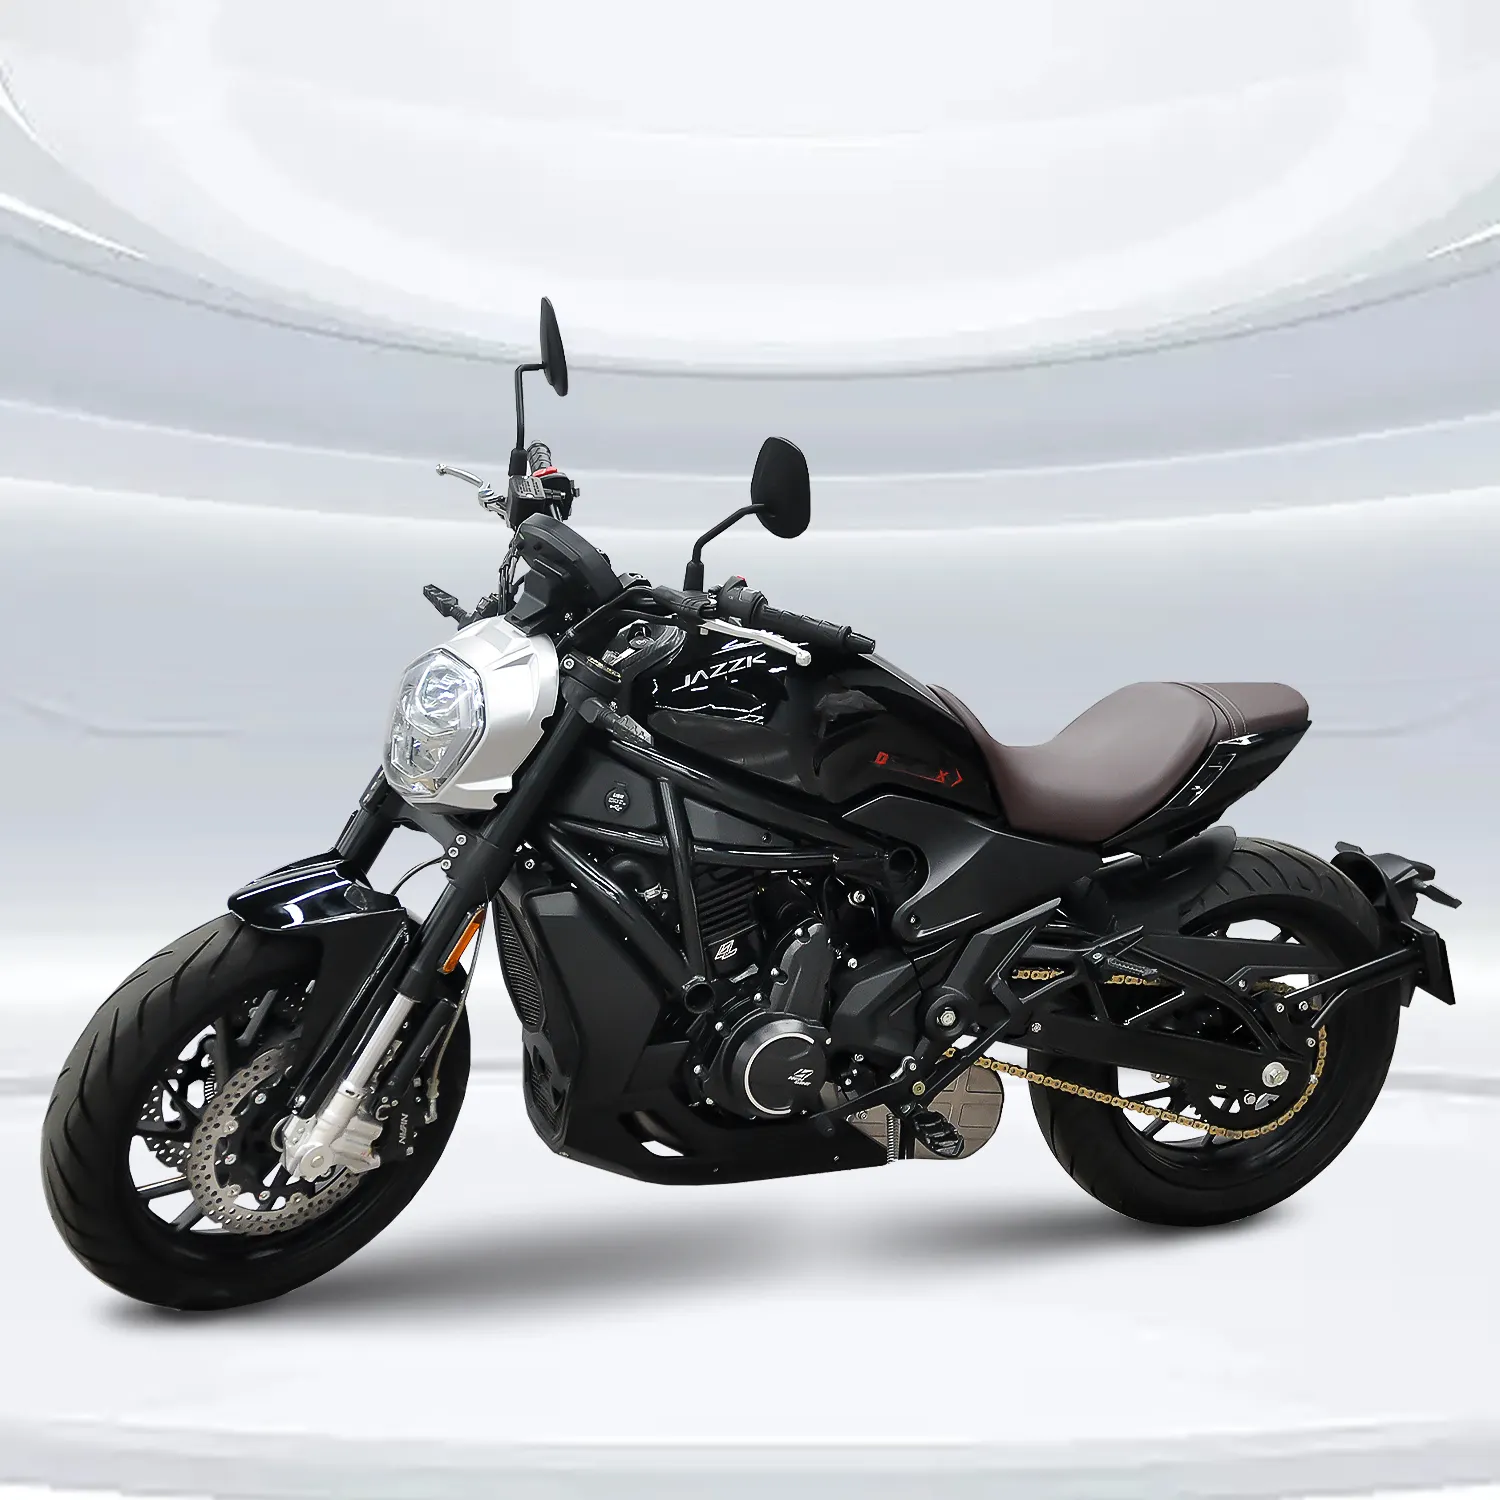 Fábrica de Abastecimento gasolina motocicleta novo modelo 650cc motocicletas a gás